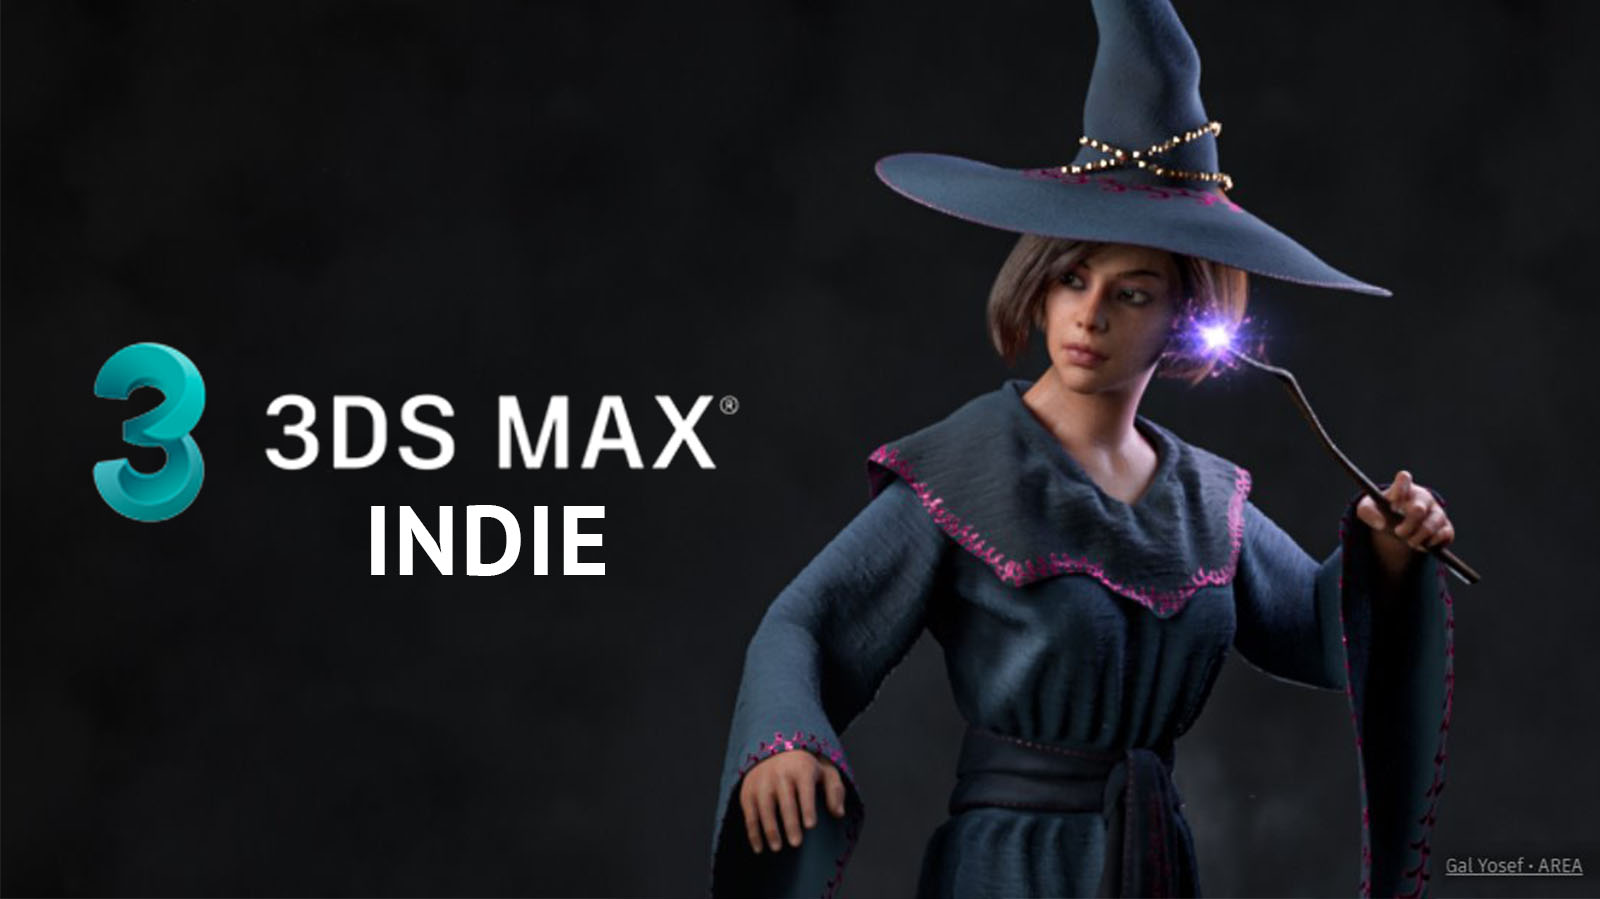 3ds Max Indie - Co to jest i jaka jest cena? Porównanie ze zwykłą licencją